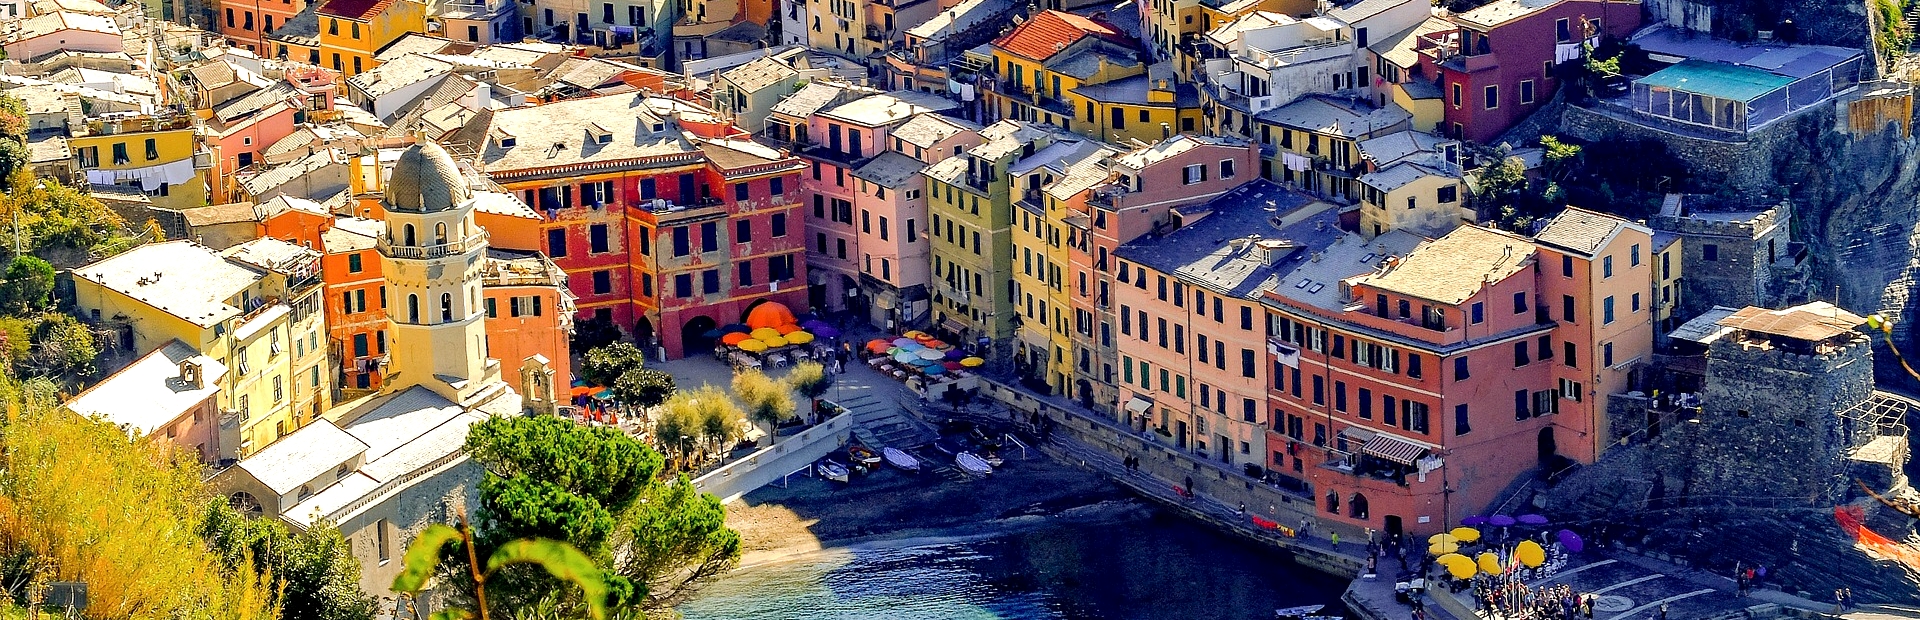 CINQUE TERRE – Portofino – Insel Elba